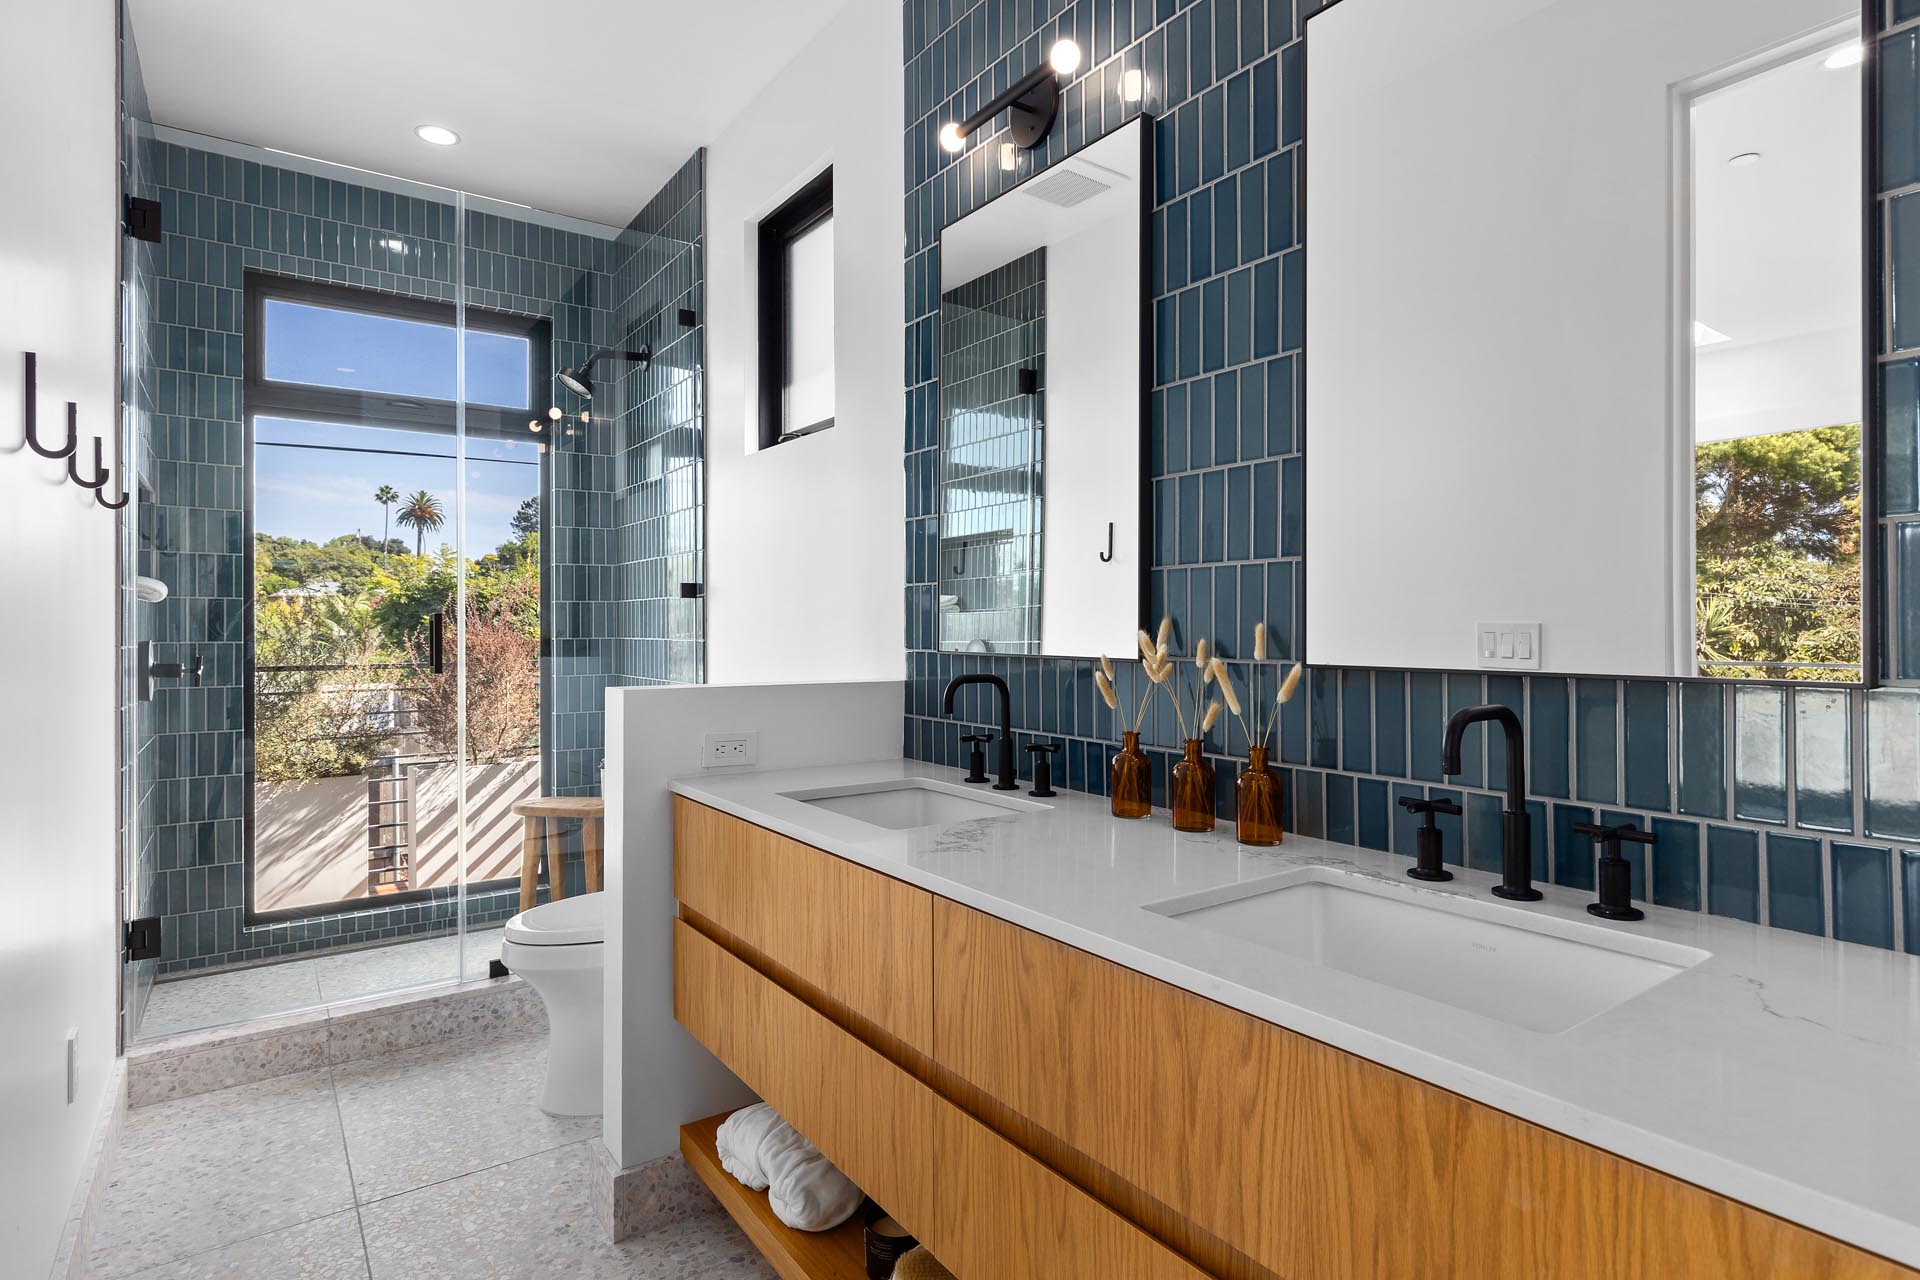 В этой современной ванной комнате синяя плитка украшает стены и душ, а также есть деревянный туалетный столик с двойной раковиной.